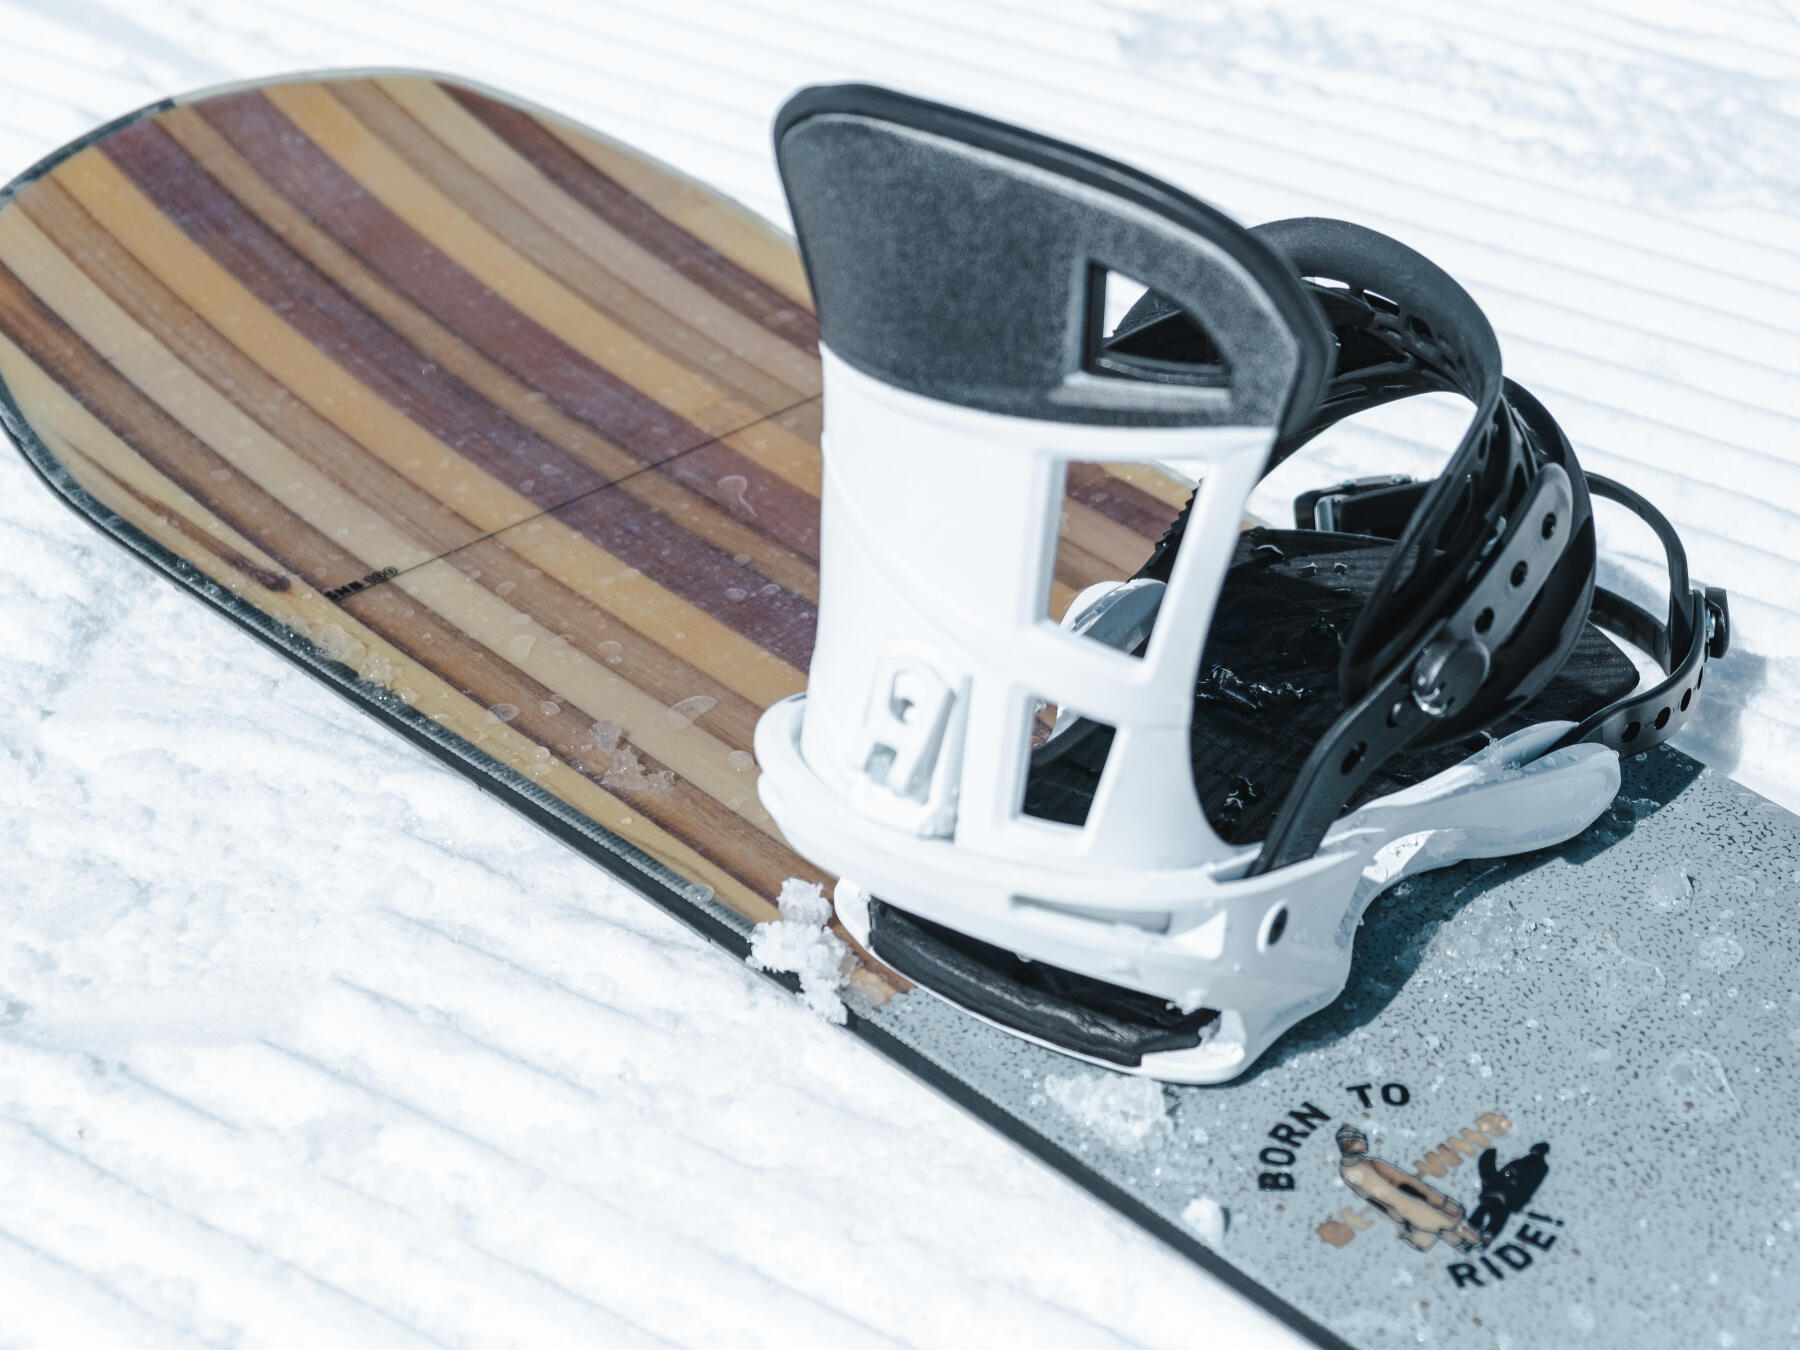 Comment faire un 50-50 en snowboard ?